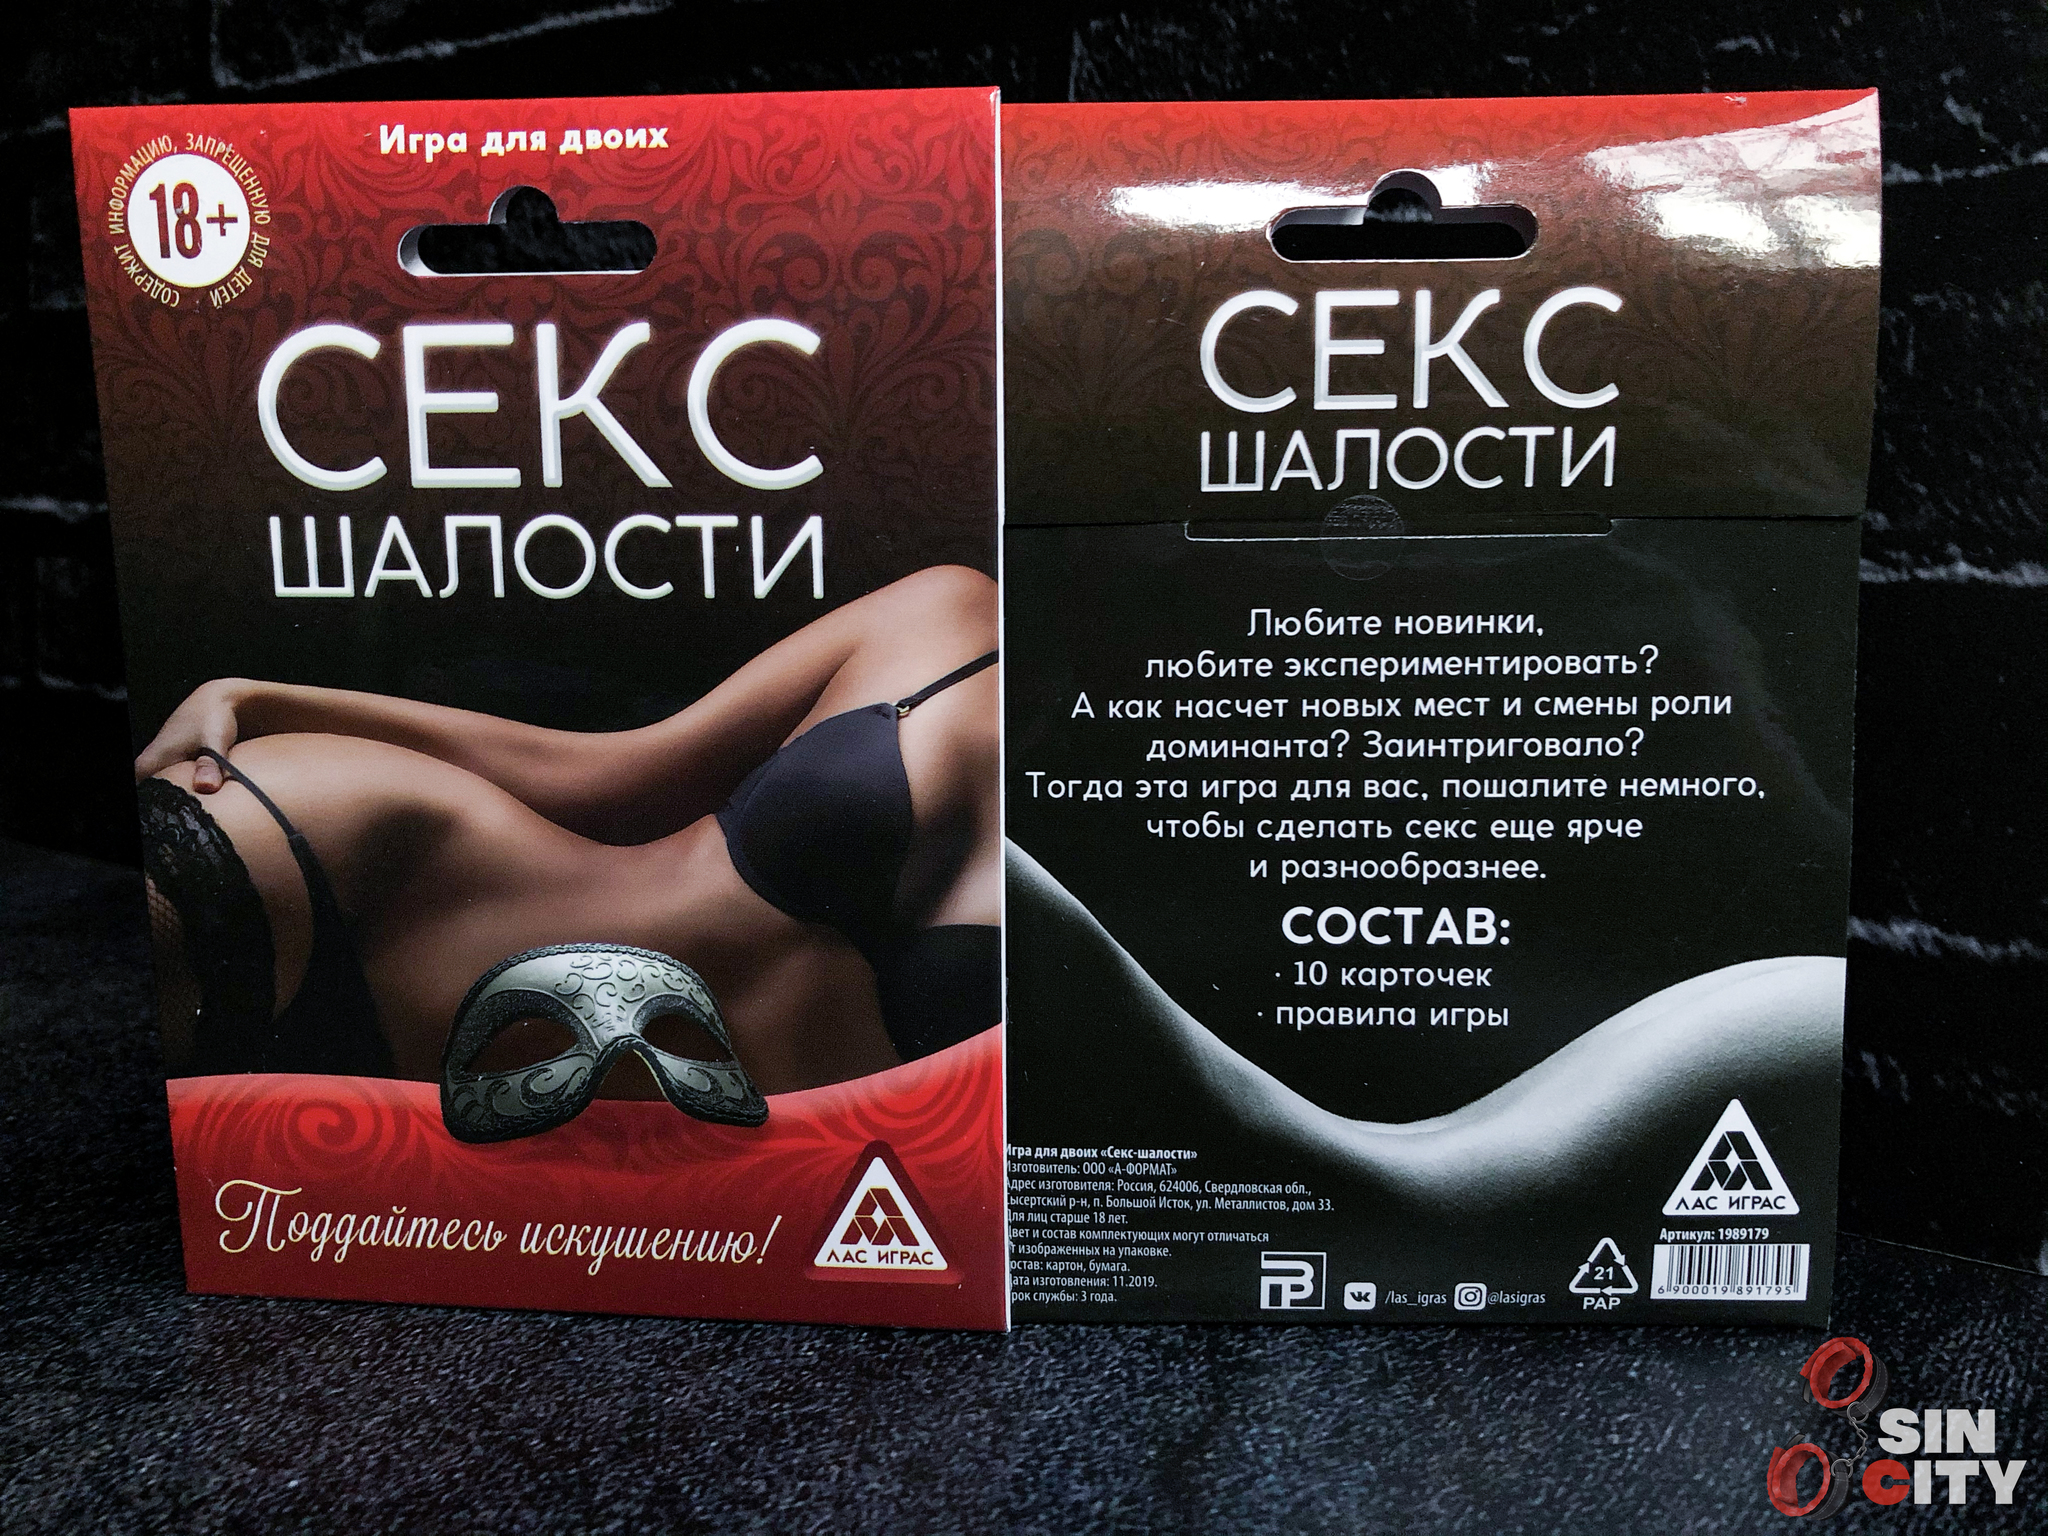 Эротические настольные игры для двоих ✔️ купить в Украине - Дом Игр